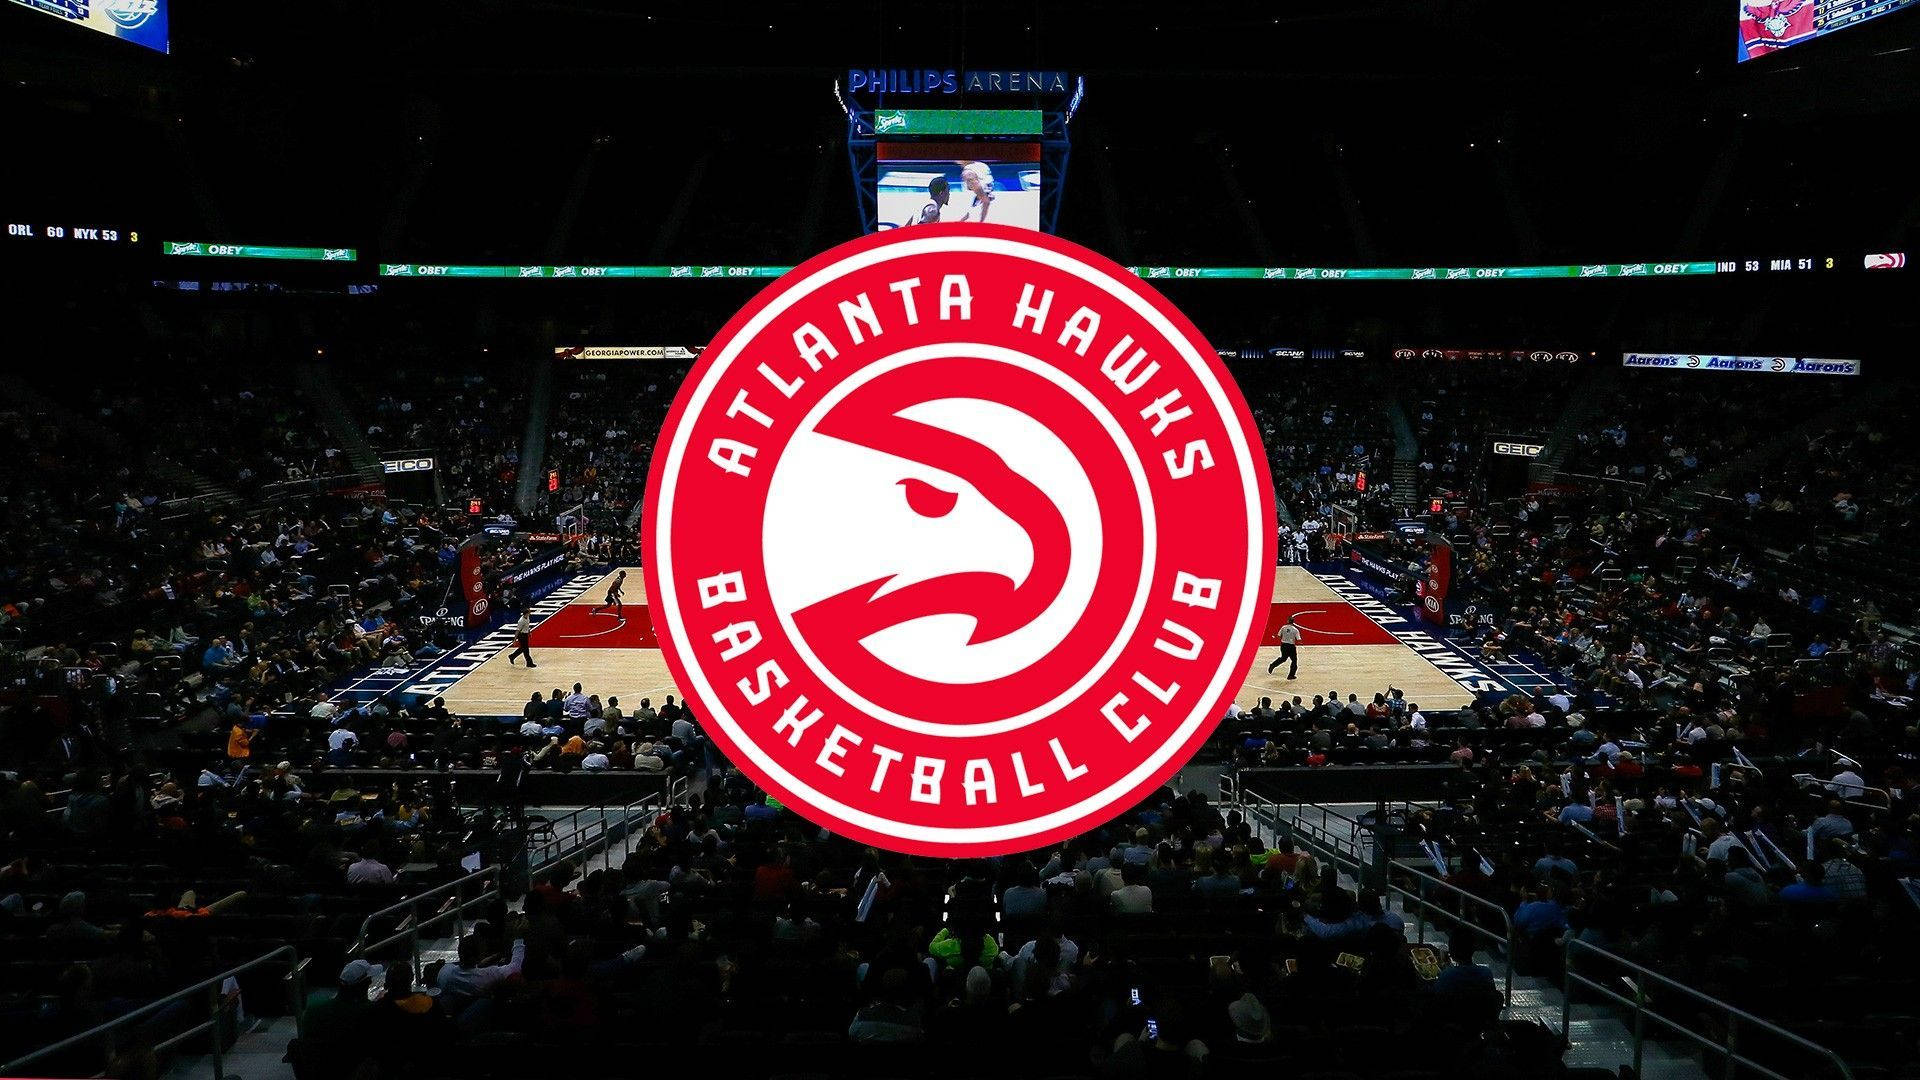 Atlantahawks Logotyp På Basketplan. Wallpaper